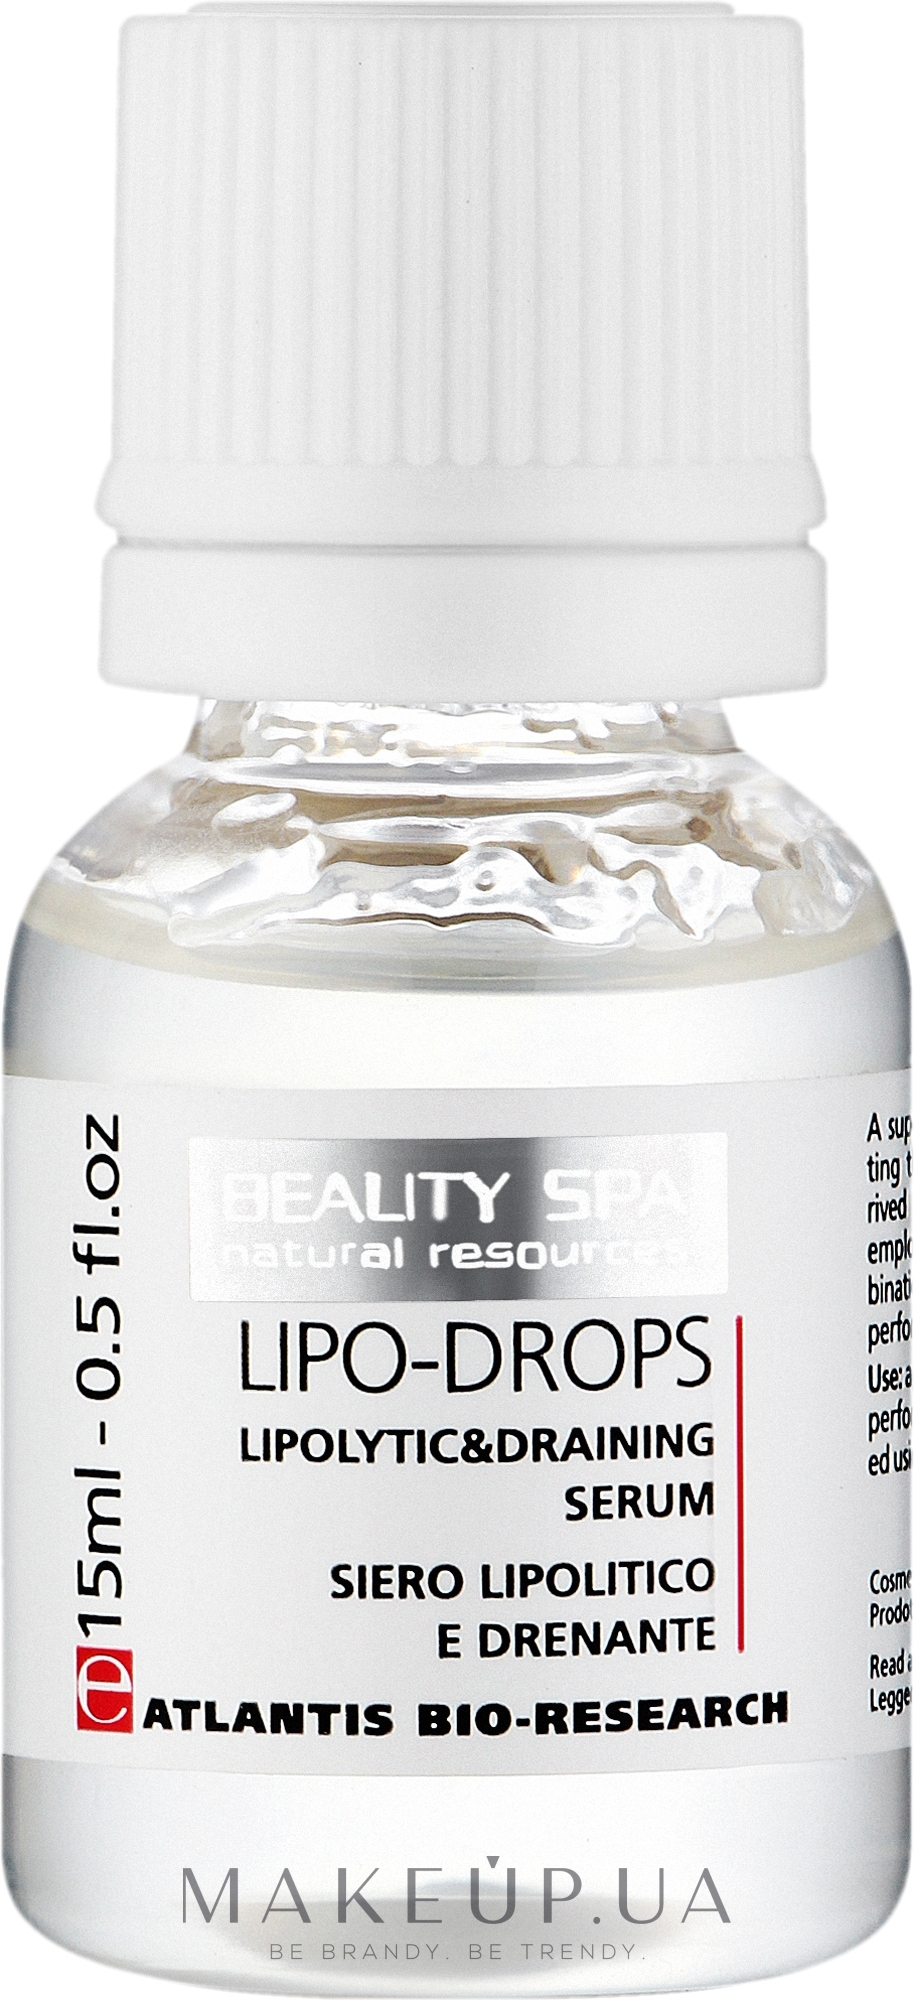 Ліполітична дренажна сироватка для обличчя і тіла - Beauty Spa Atlantis Lipo-Drops — фото 5x15ml